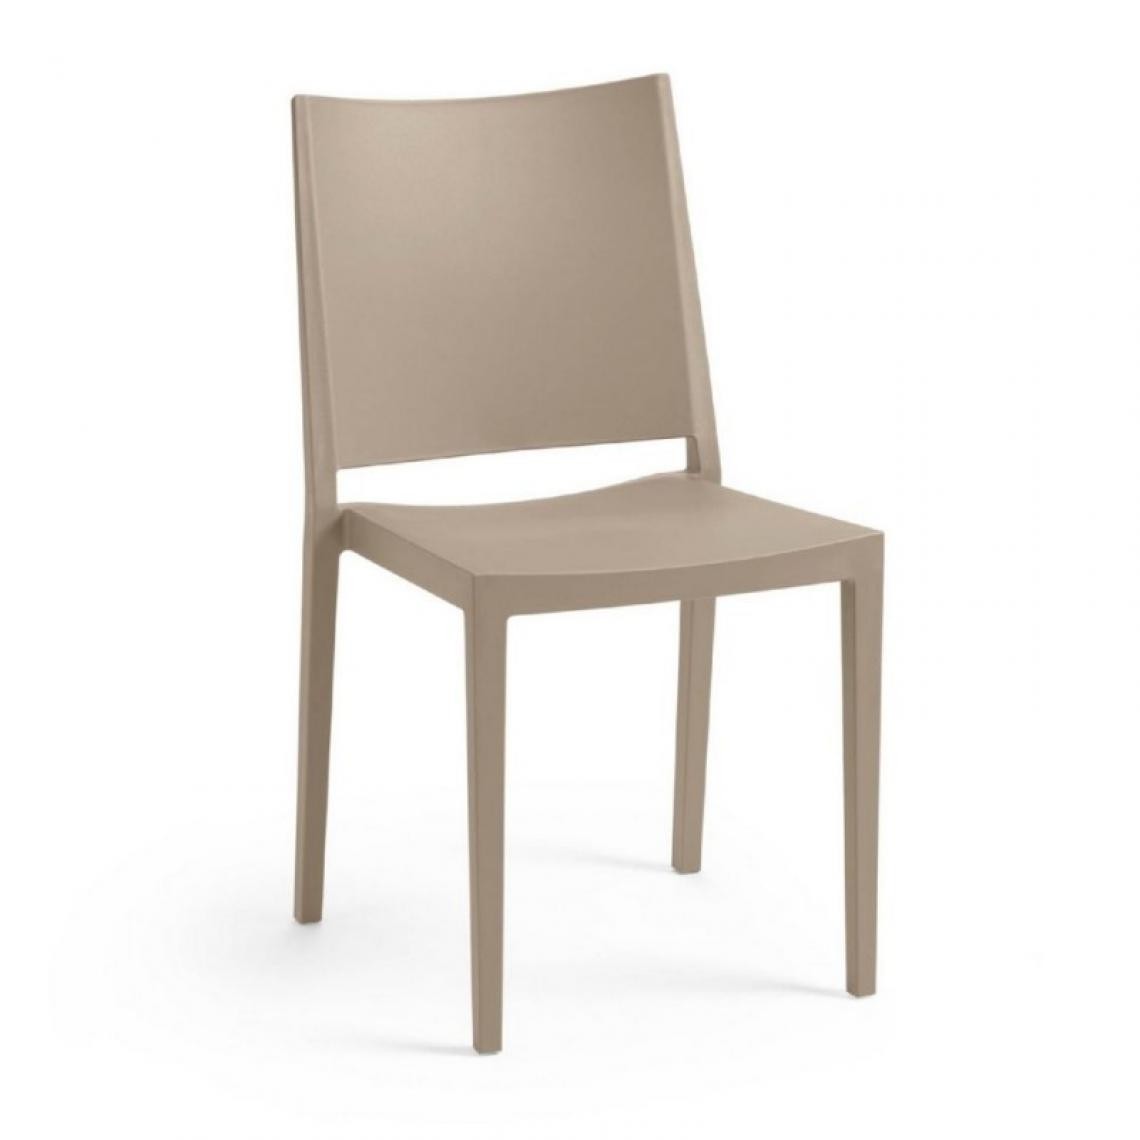 Webmarketpoint - Chaise de salon en polypropylène Tortora MOSK 46x56x h82 cm - Chaises